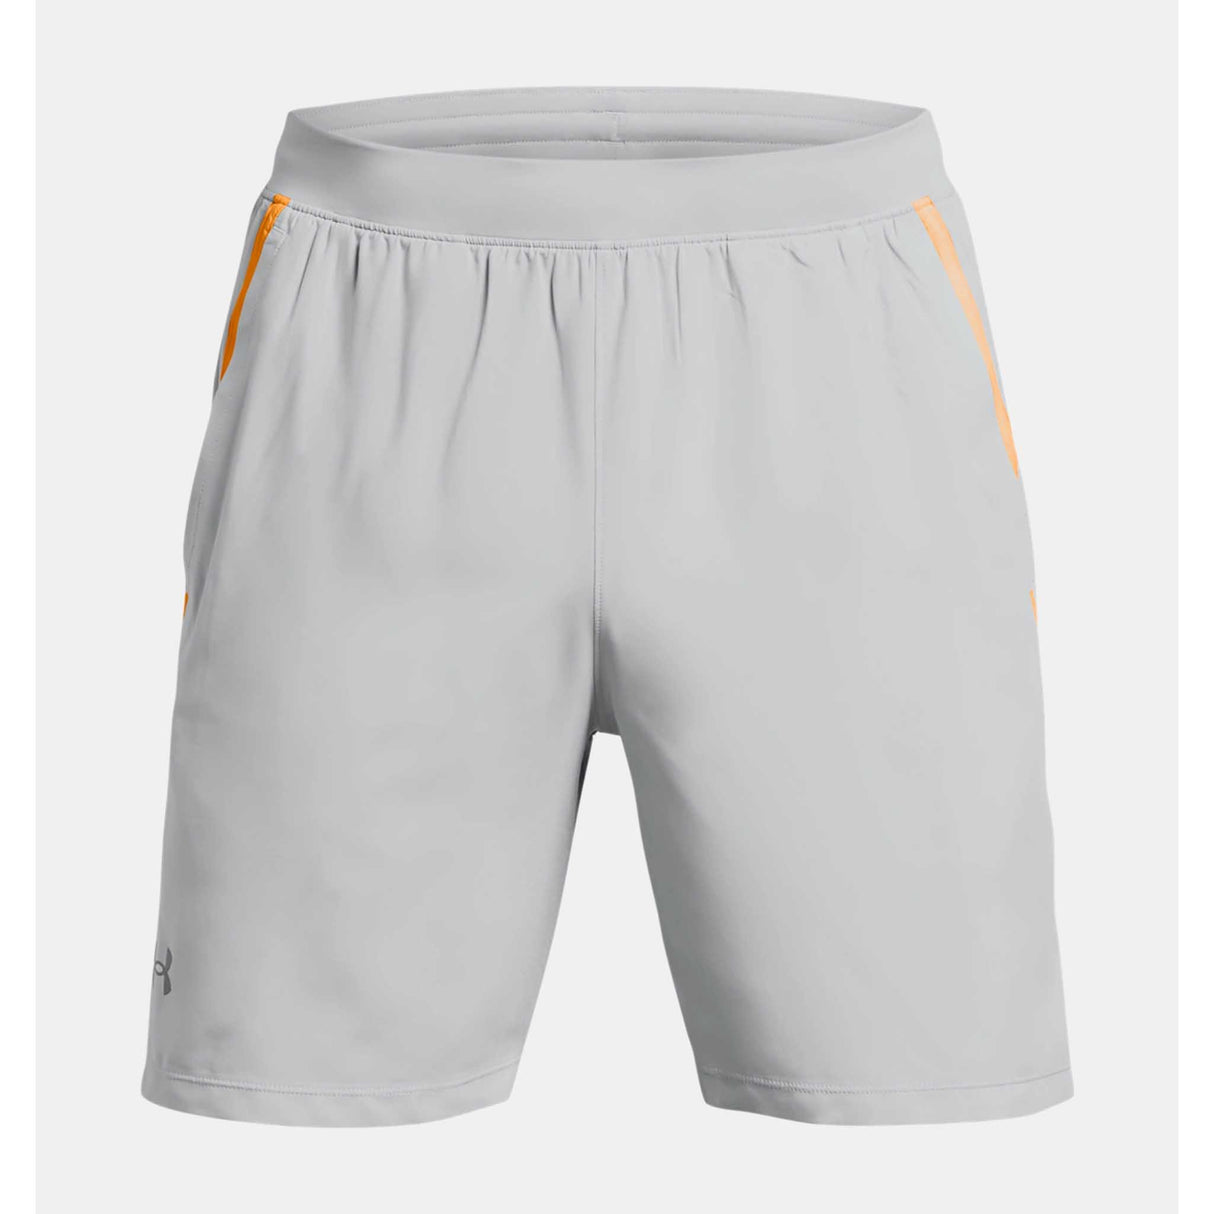 Under Armour Launch shorts homme 7 pouces - Mod Gray / Nova Orange / Reflective